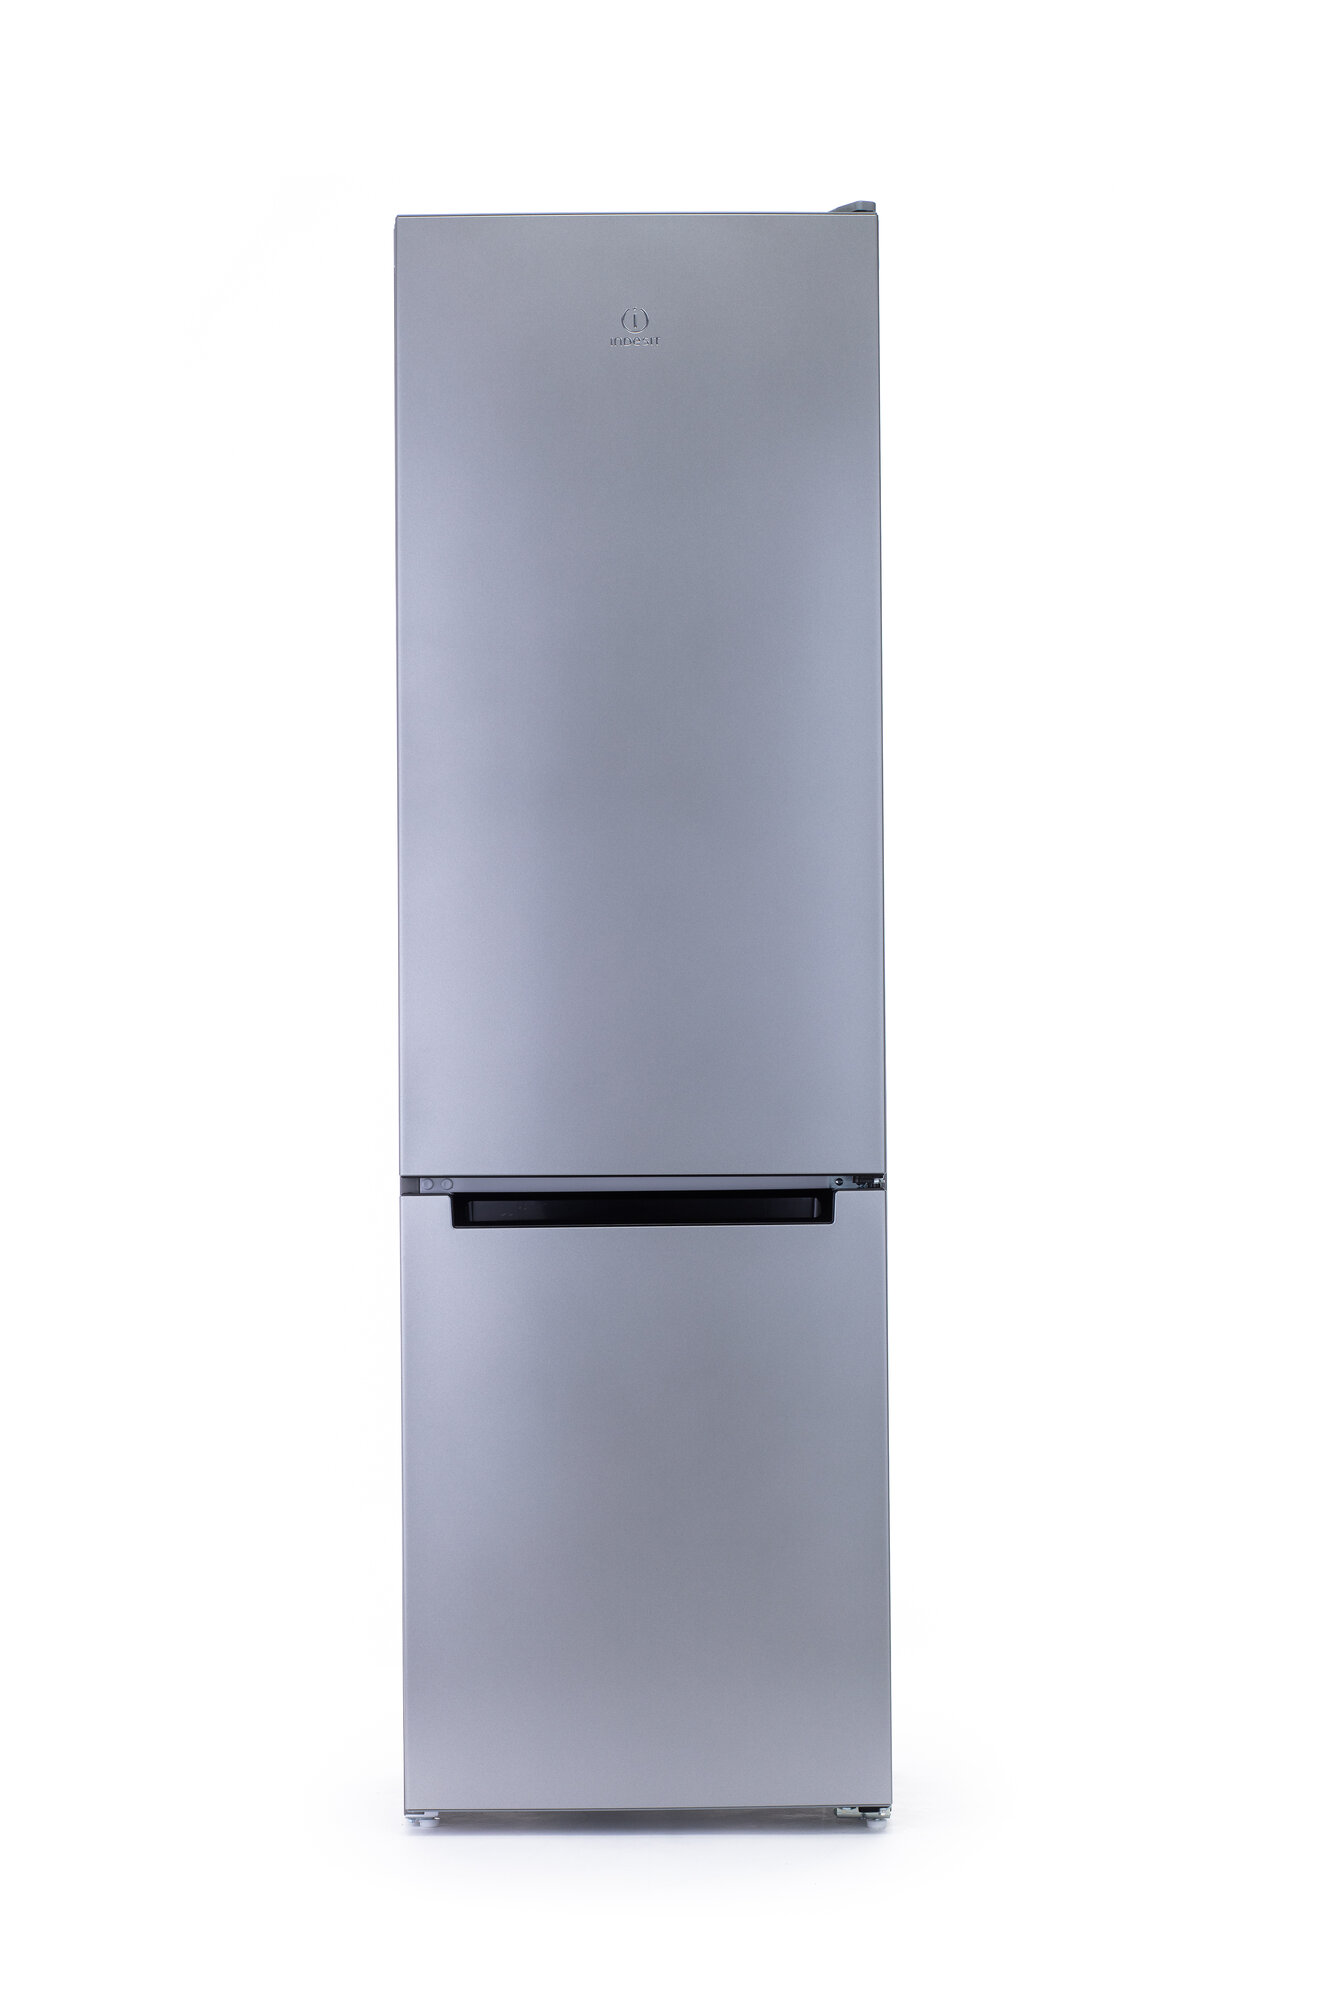 Двухкамерный холодильник Indesit DS 4200 G, серебристый